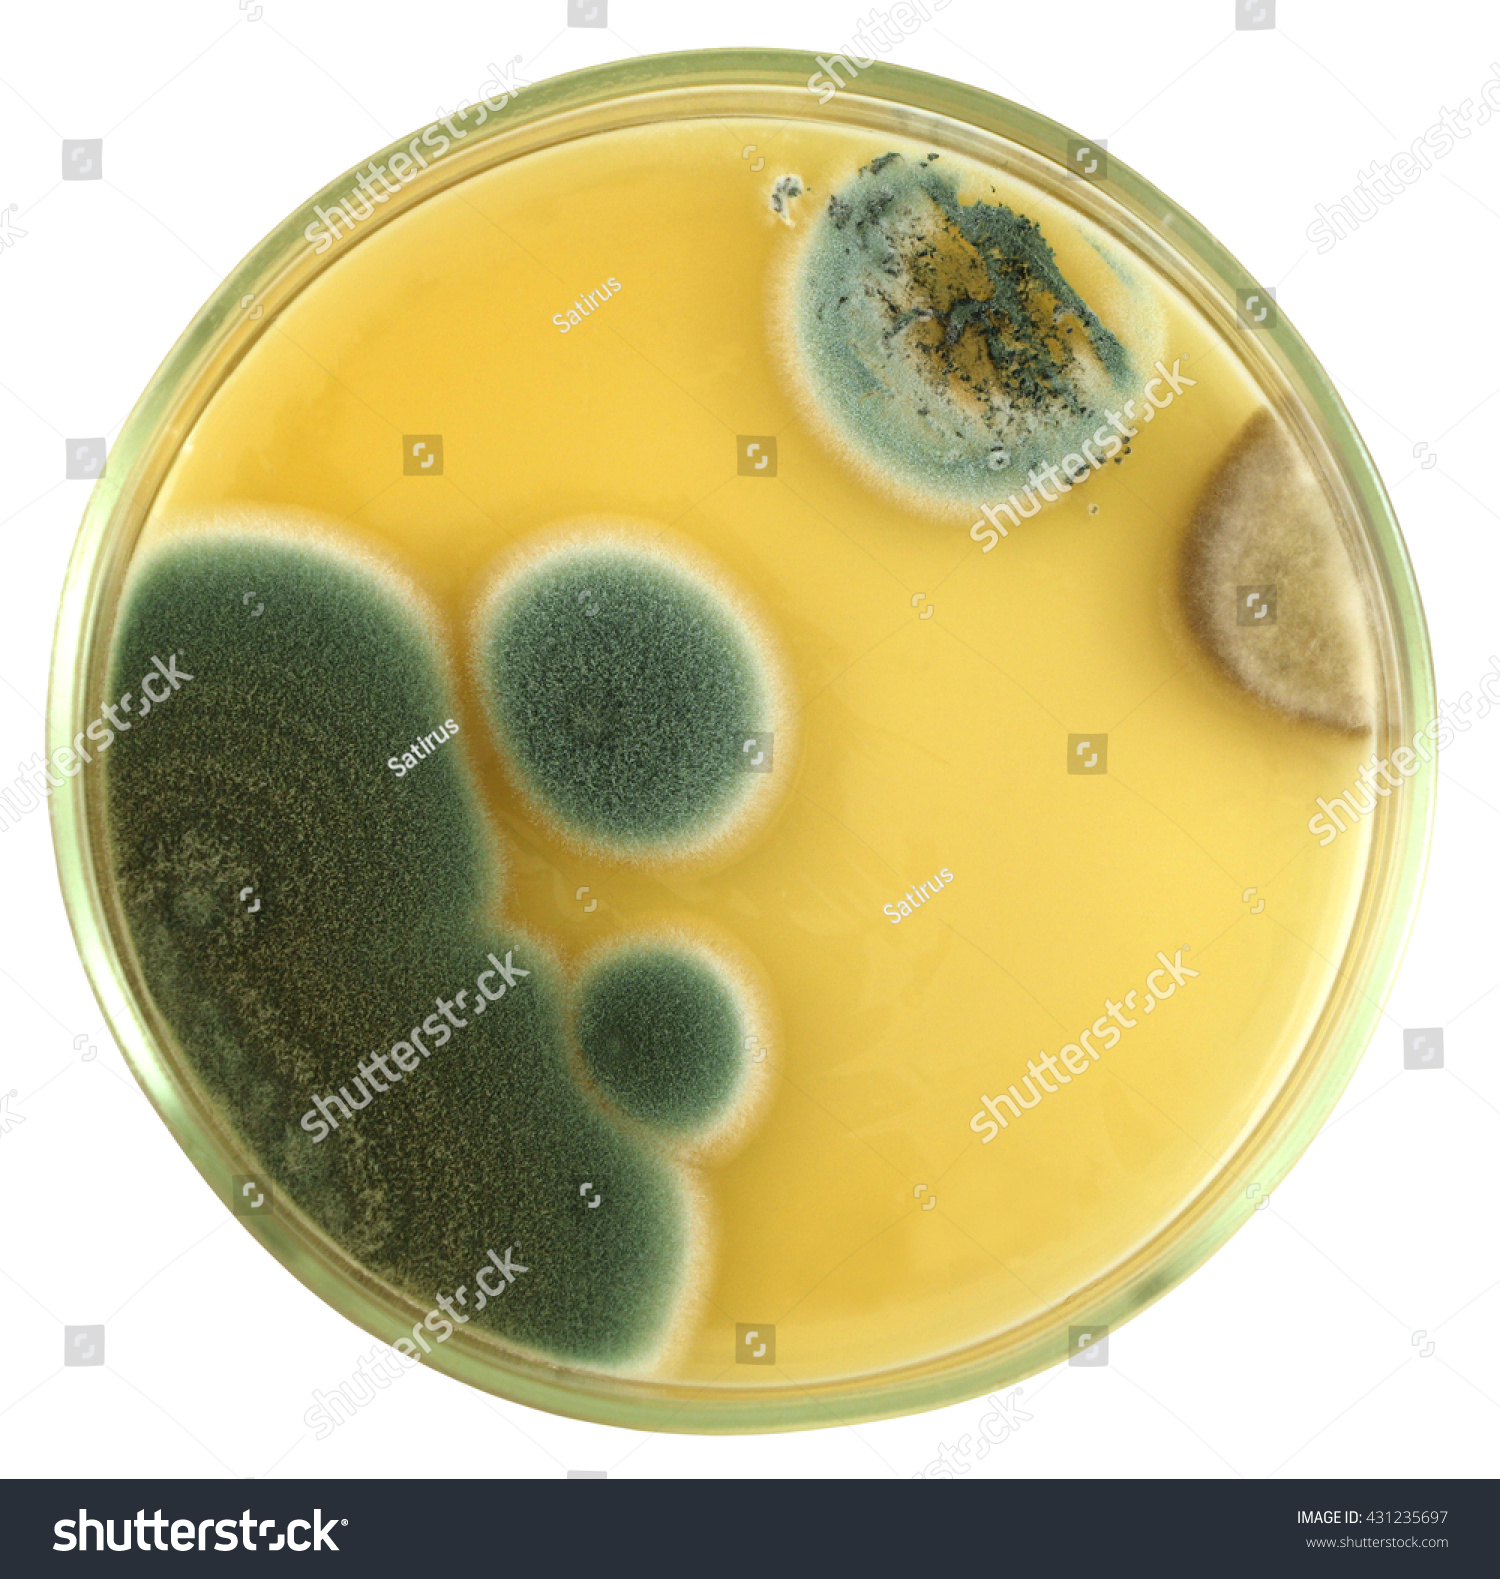 Colonies of allergic mould (genus Penicillium a